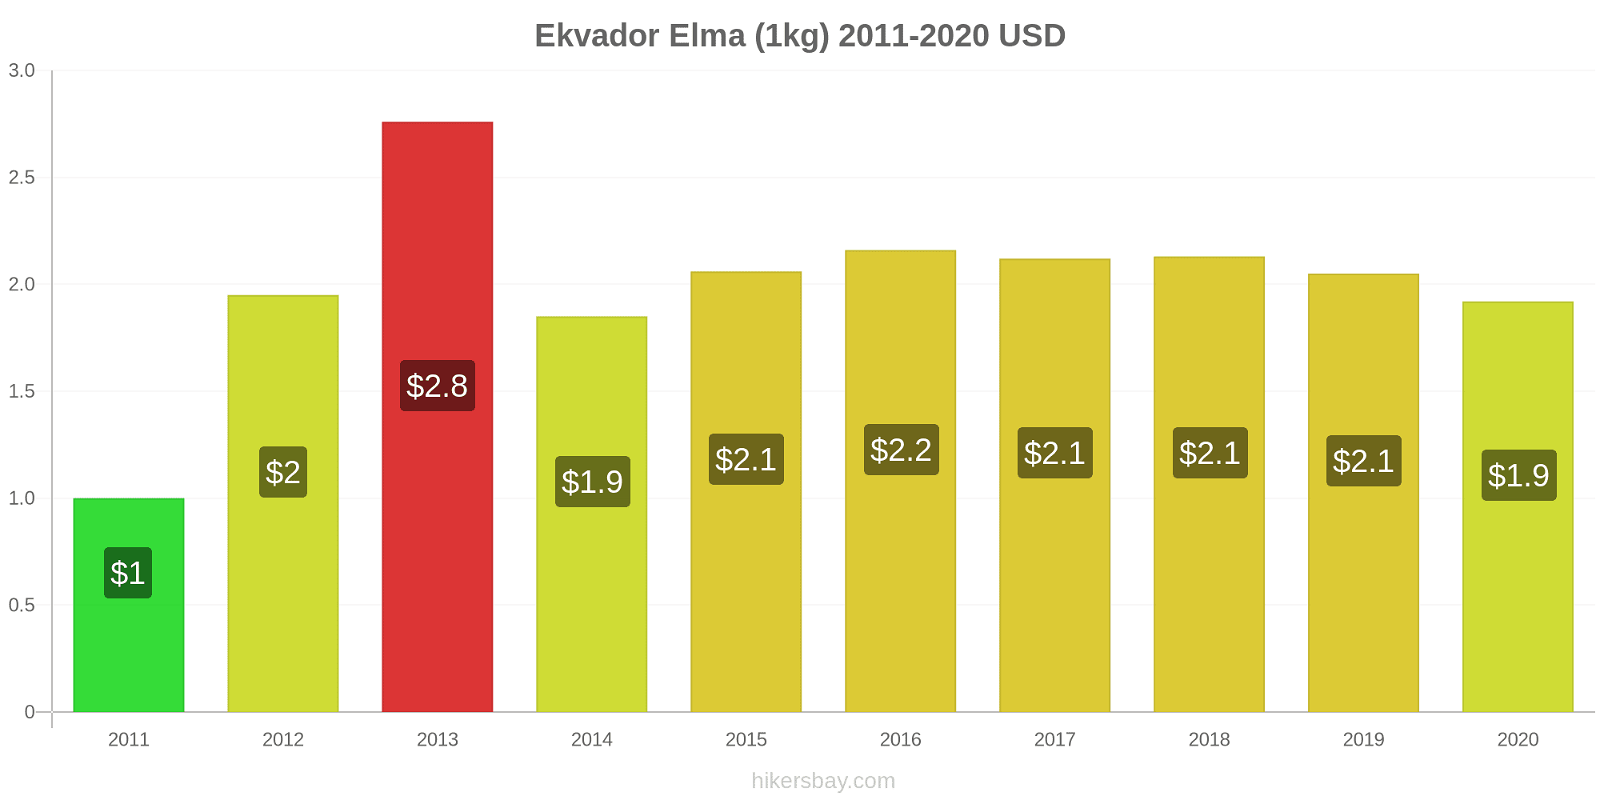 Ekvador fiyat değişiklikleri Elma (1kg) hikersbay.com